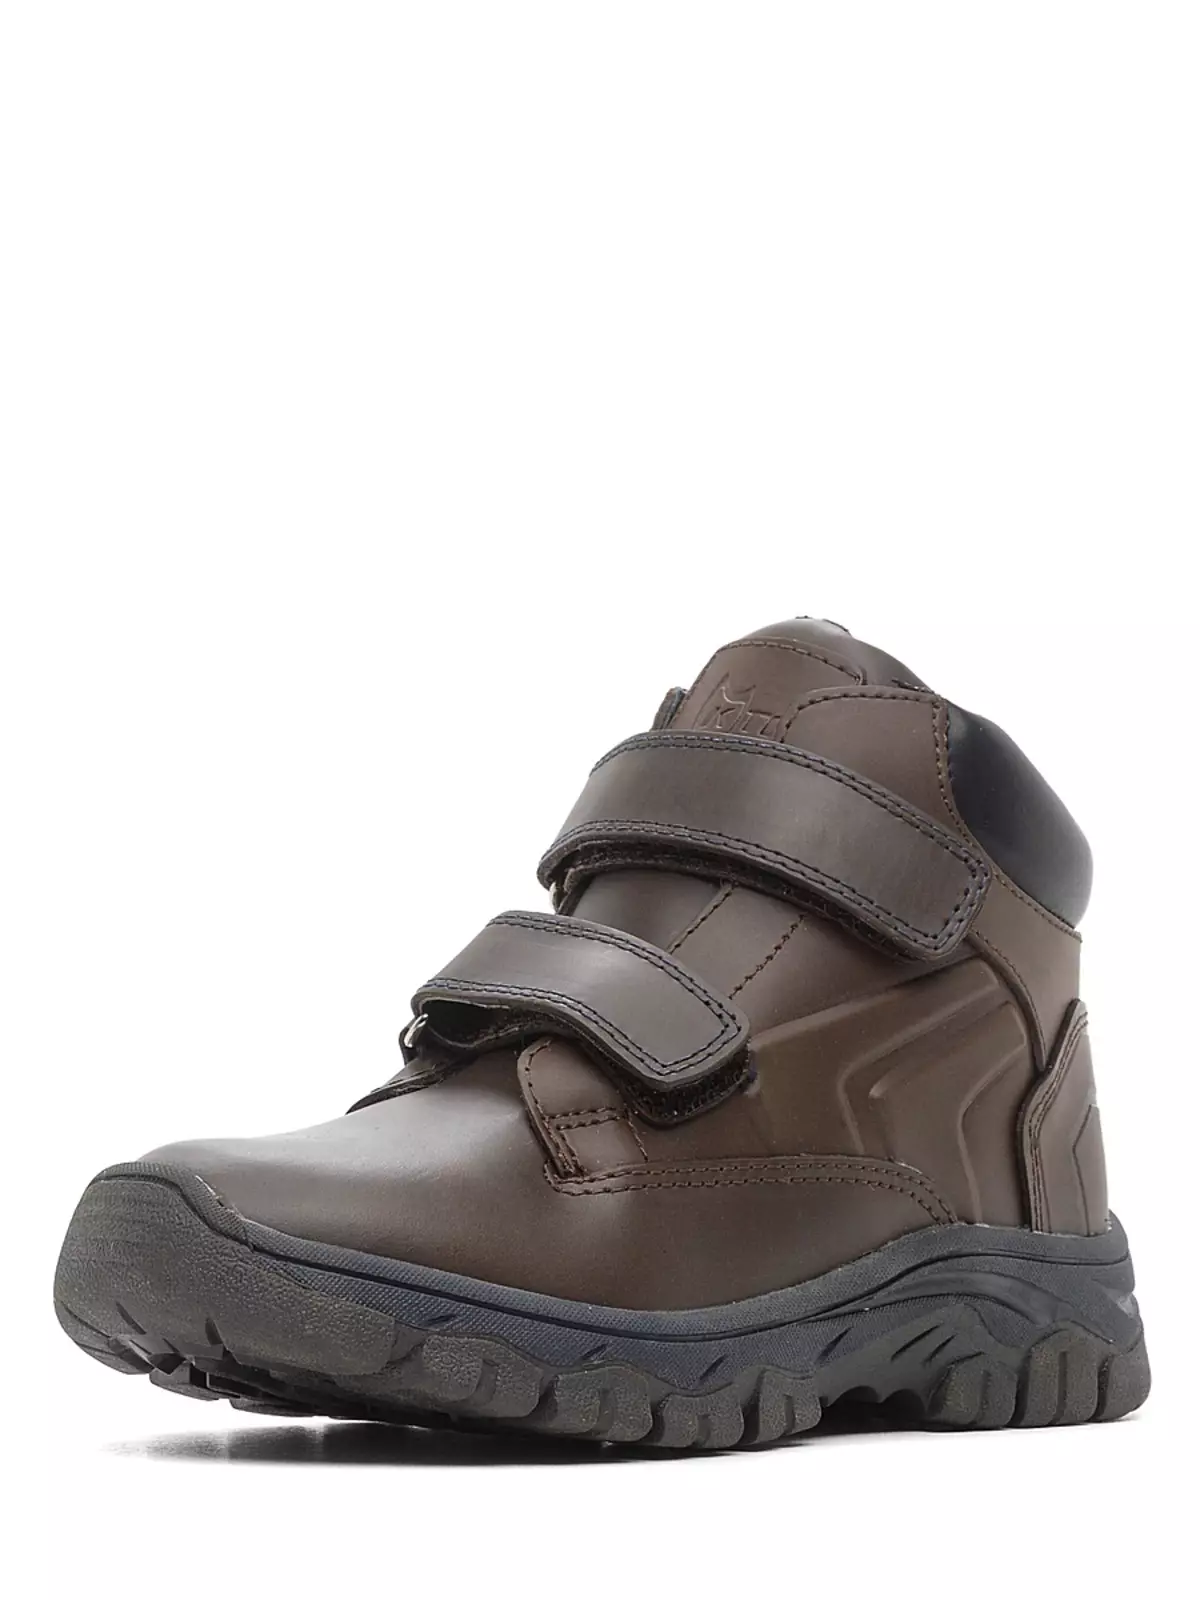 Boots sneakers (76 wêne): pêlavên zivistanê yên zivistanê yên jinê 1851_33